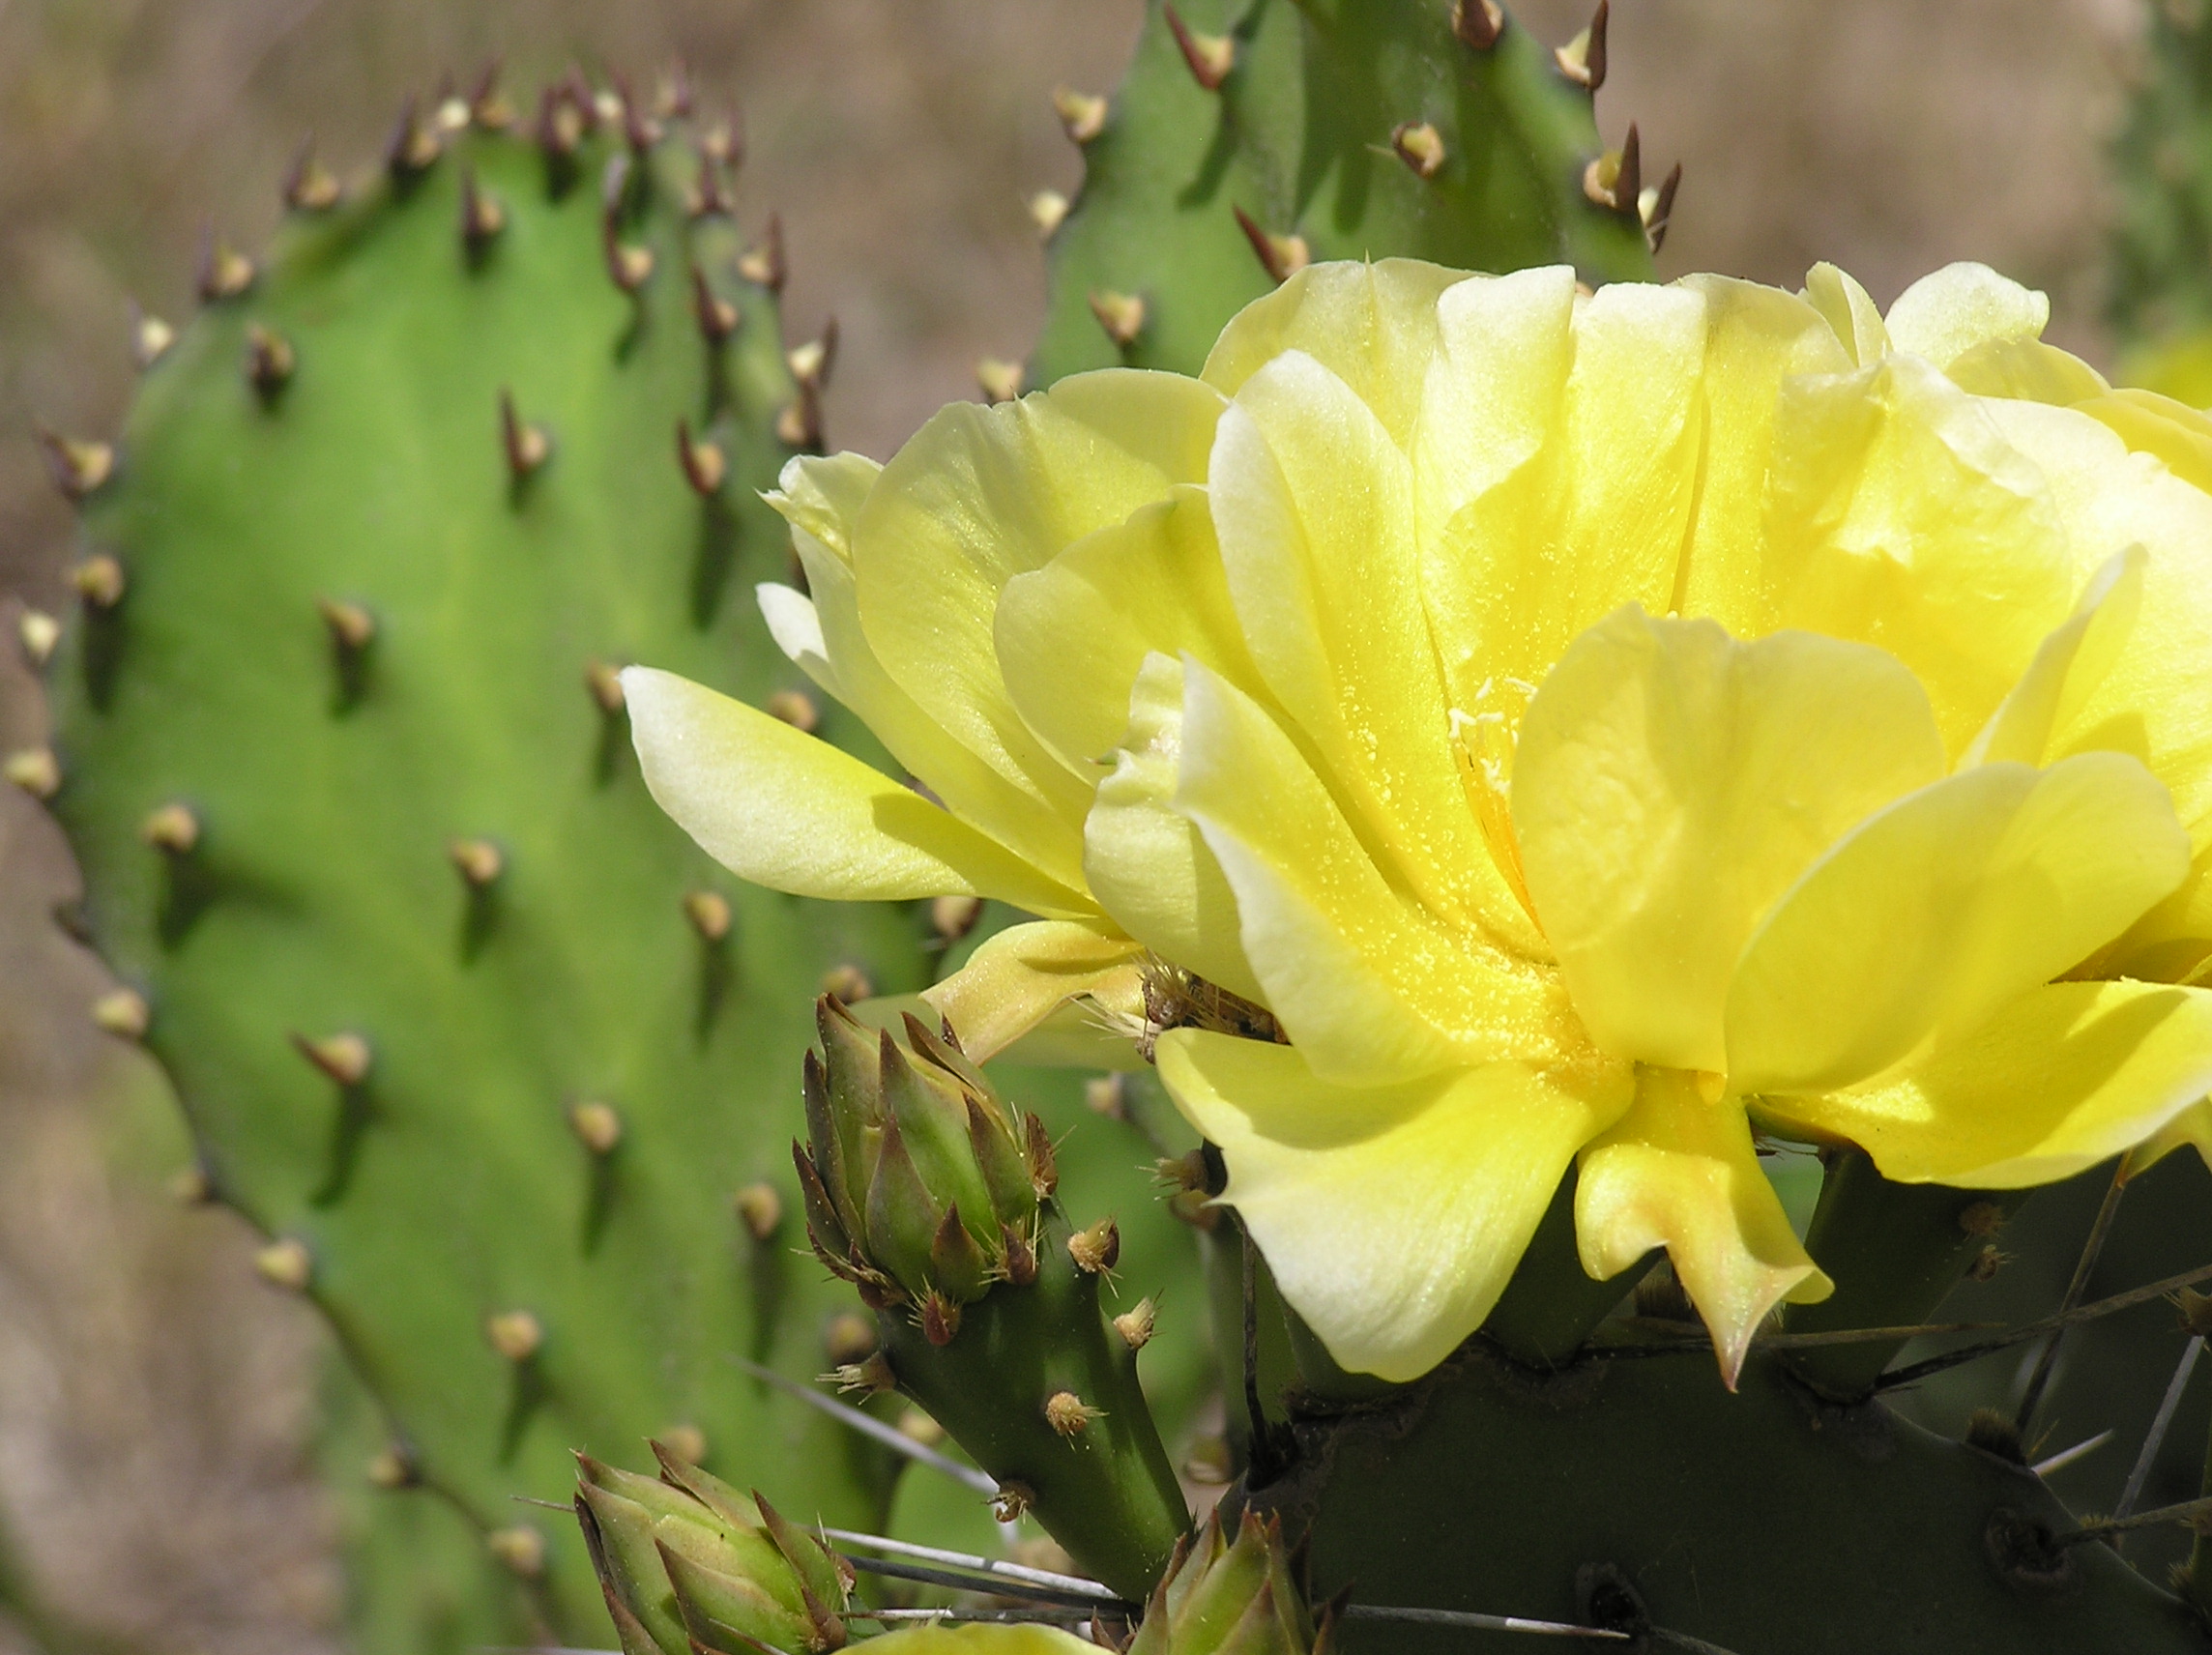 File:Yellow cactus flower.jpg - Wikimedia Commons